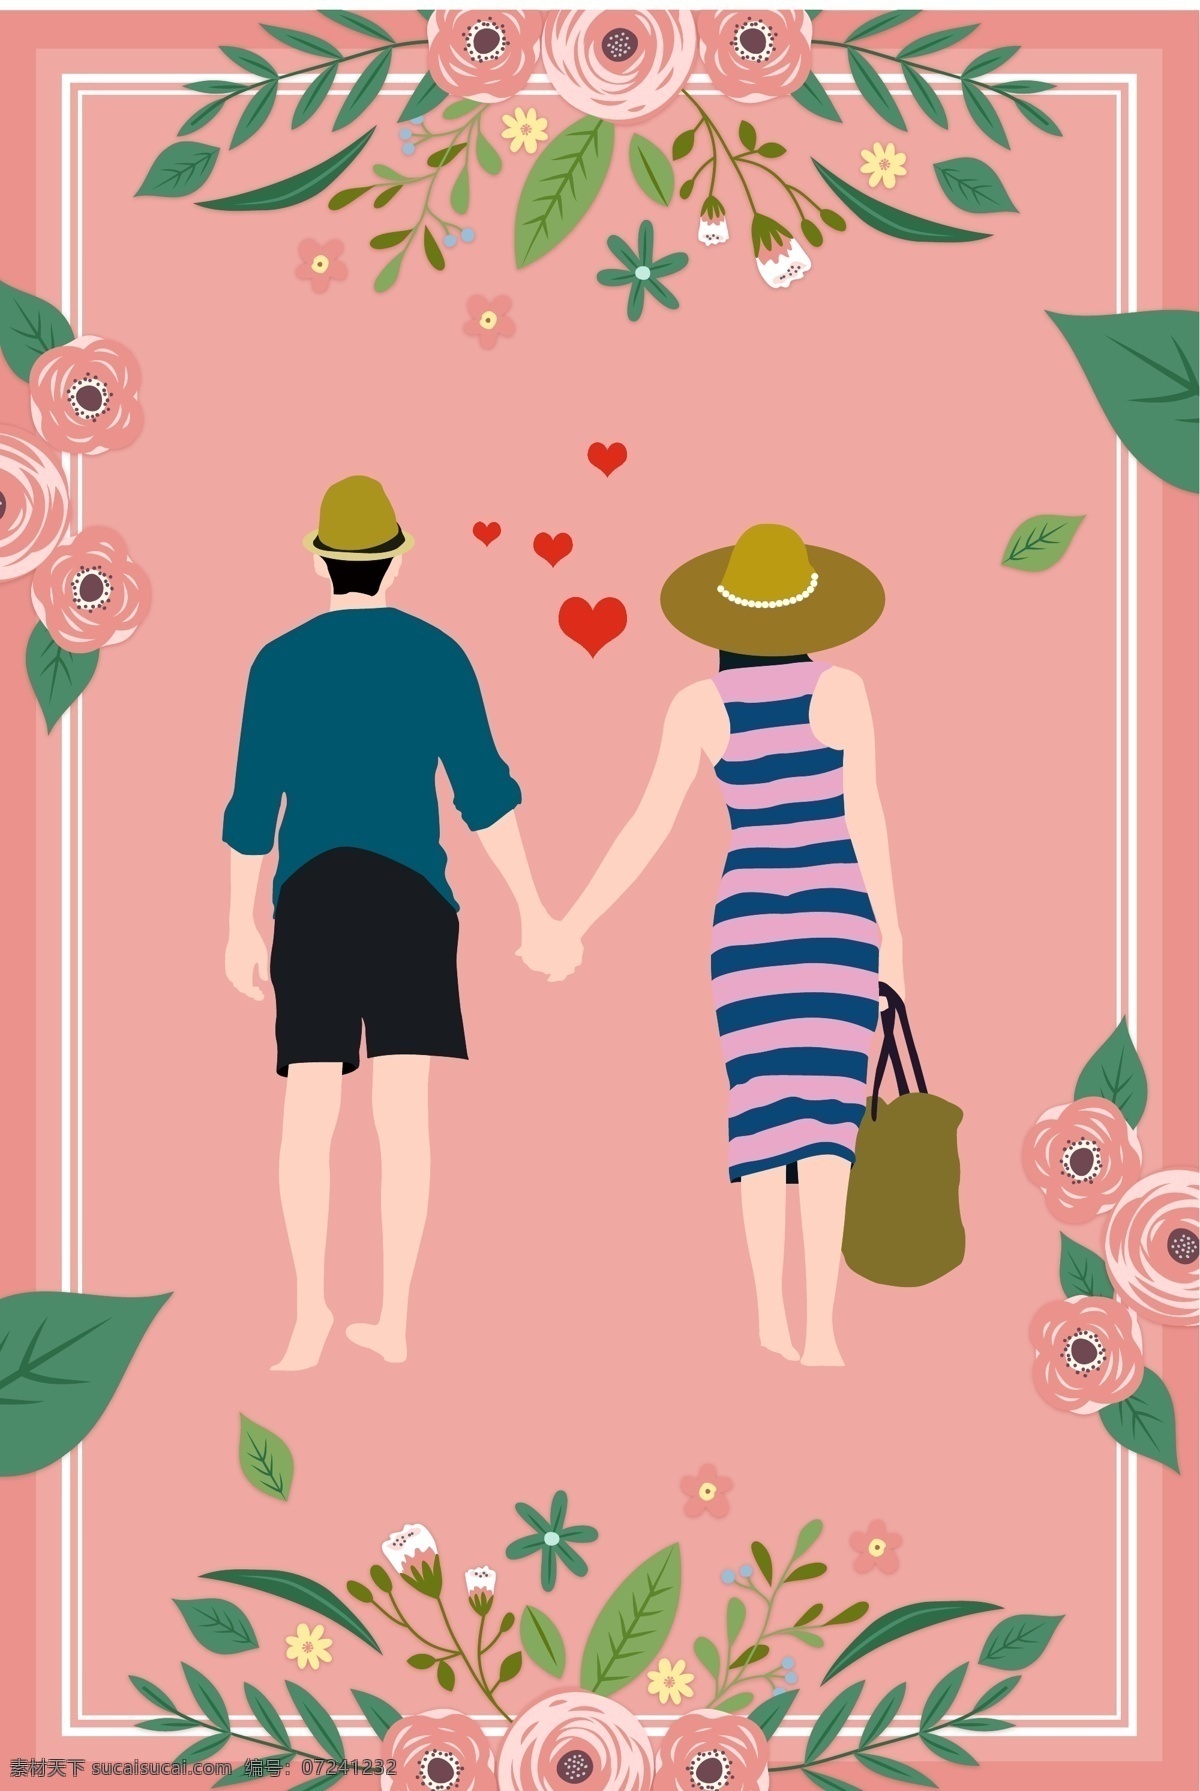 天猫 婚 博 会 情侣 花卉 海报 花丛中的新人 线条 边框 婚博会 粉色背景 卡通 绿植 手绘 新人 结婚